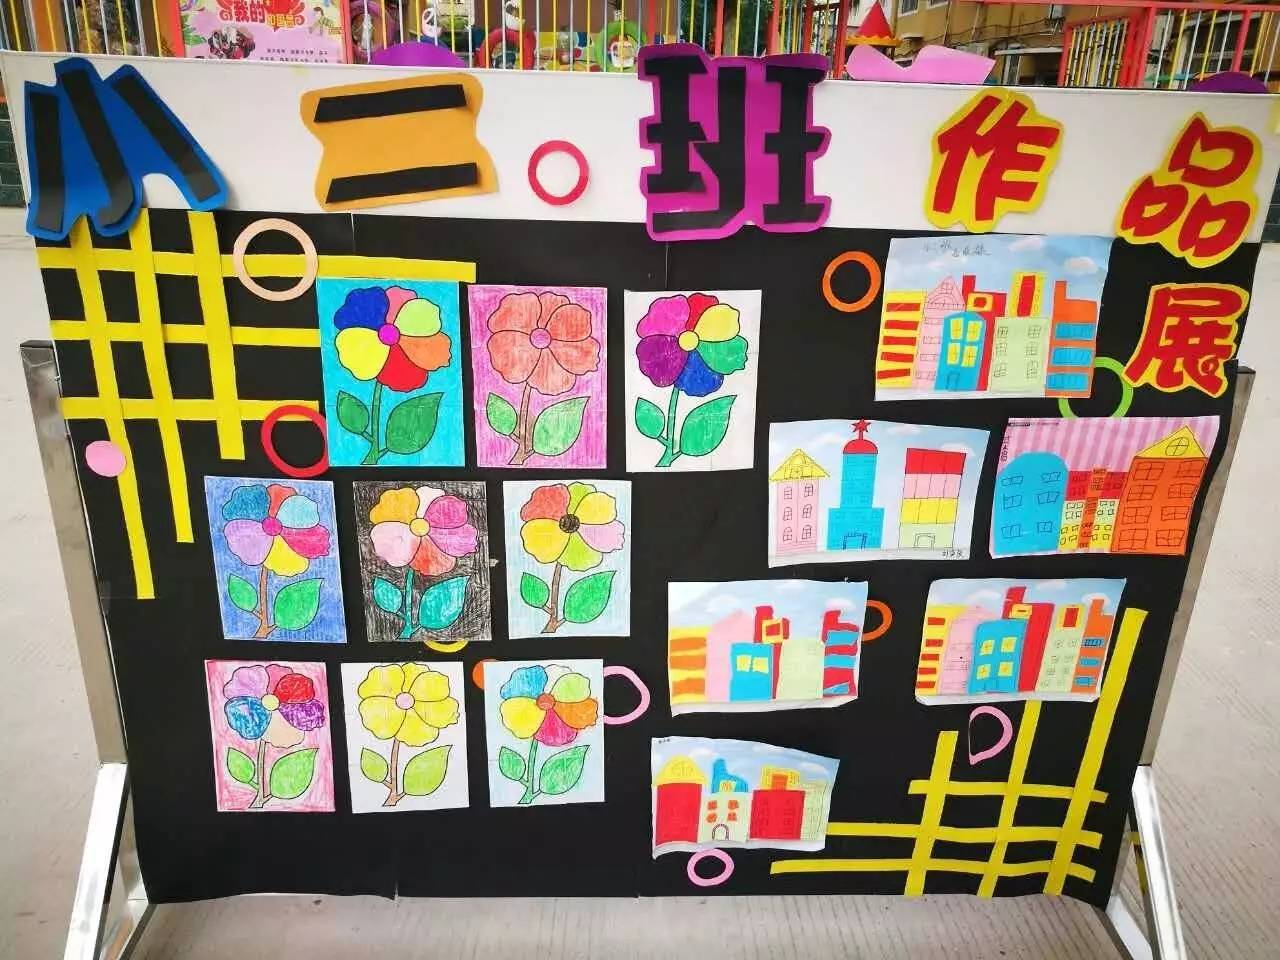 大同幼儿园举行"幼儿创意绘画,手工作品,自制玩教具作品展"